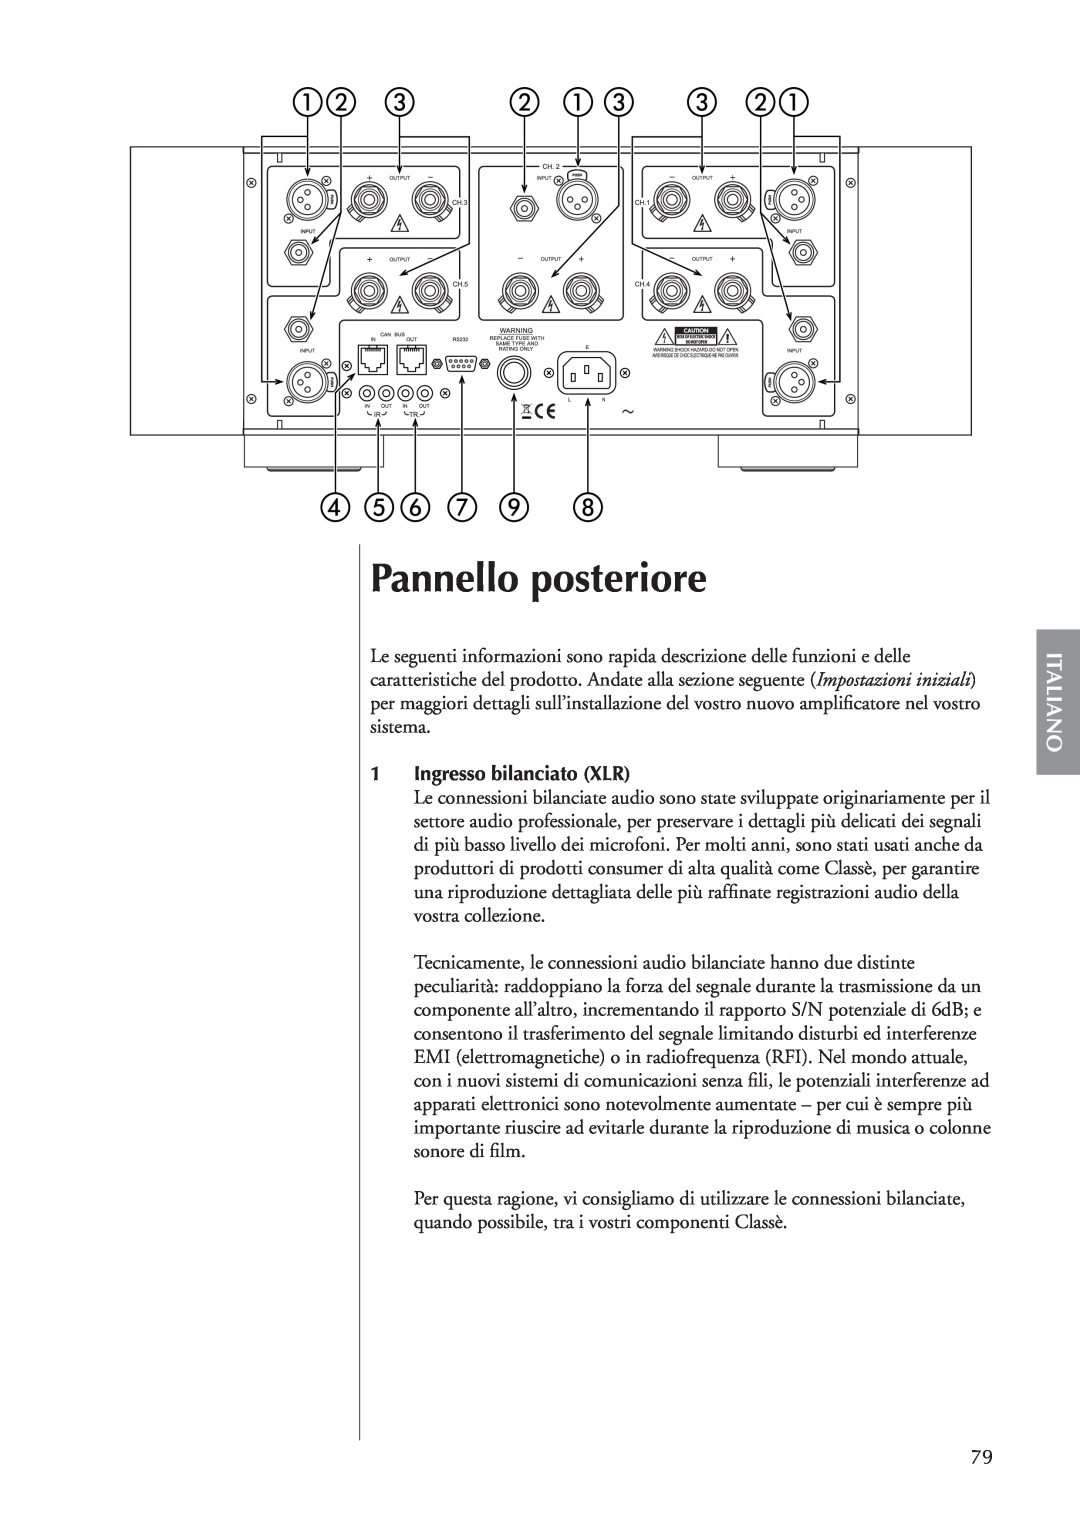 Classe Audio CA-5100 owner manual Pannello posteriore, Italiano, 1Ingresso bilanciato XLR 